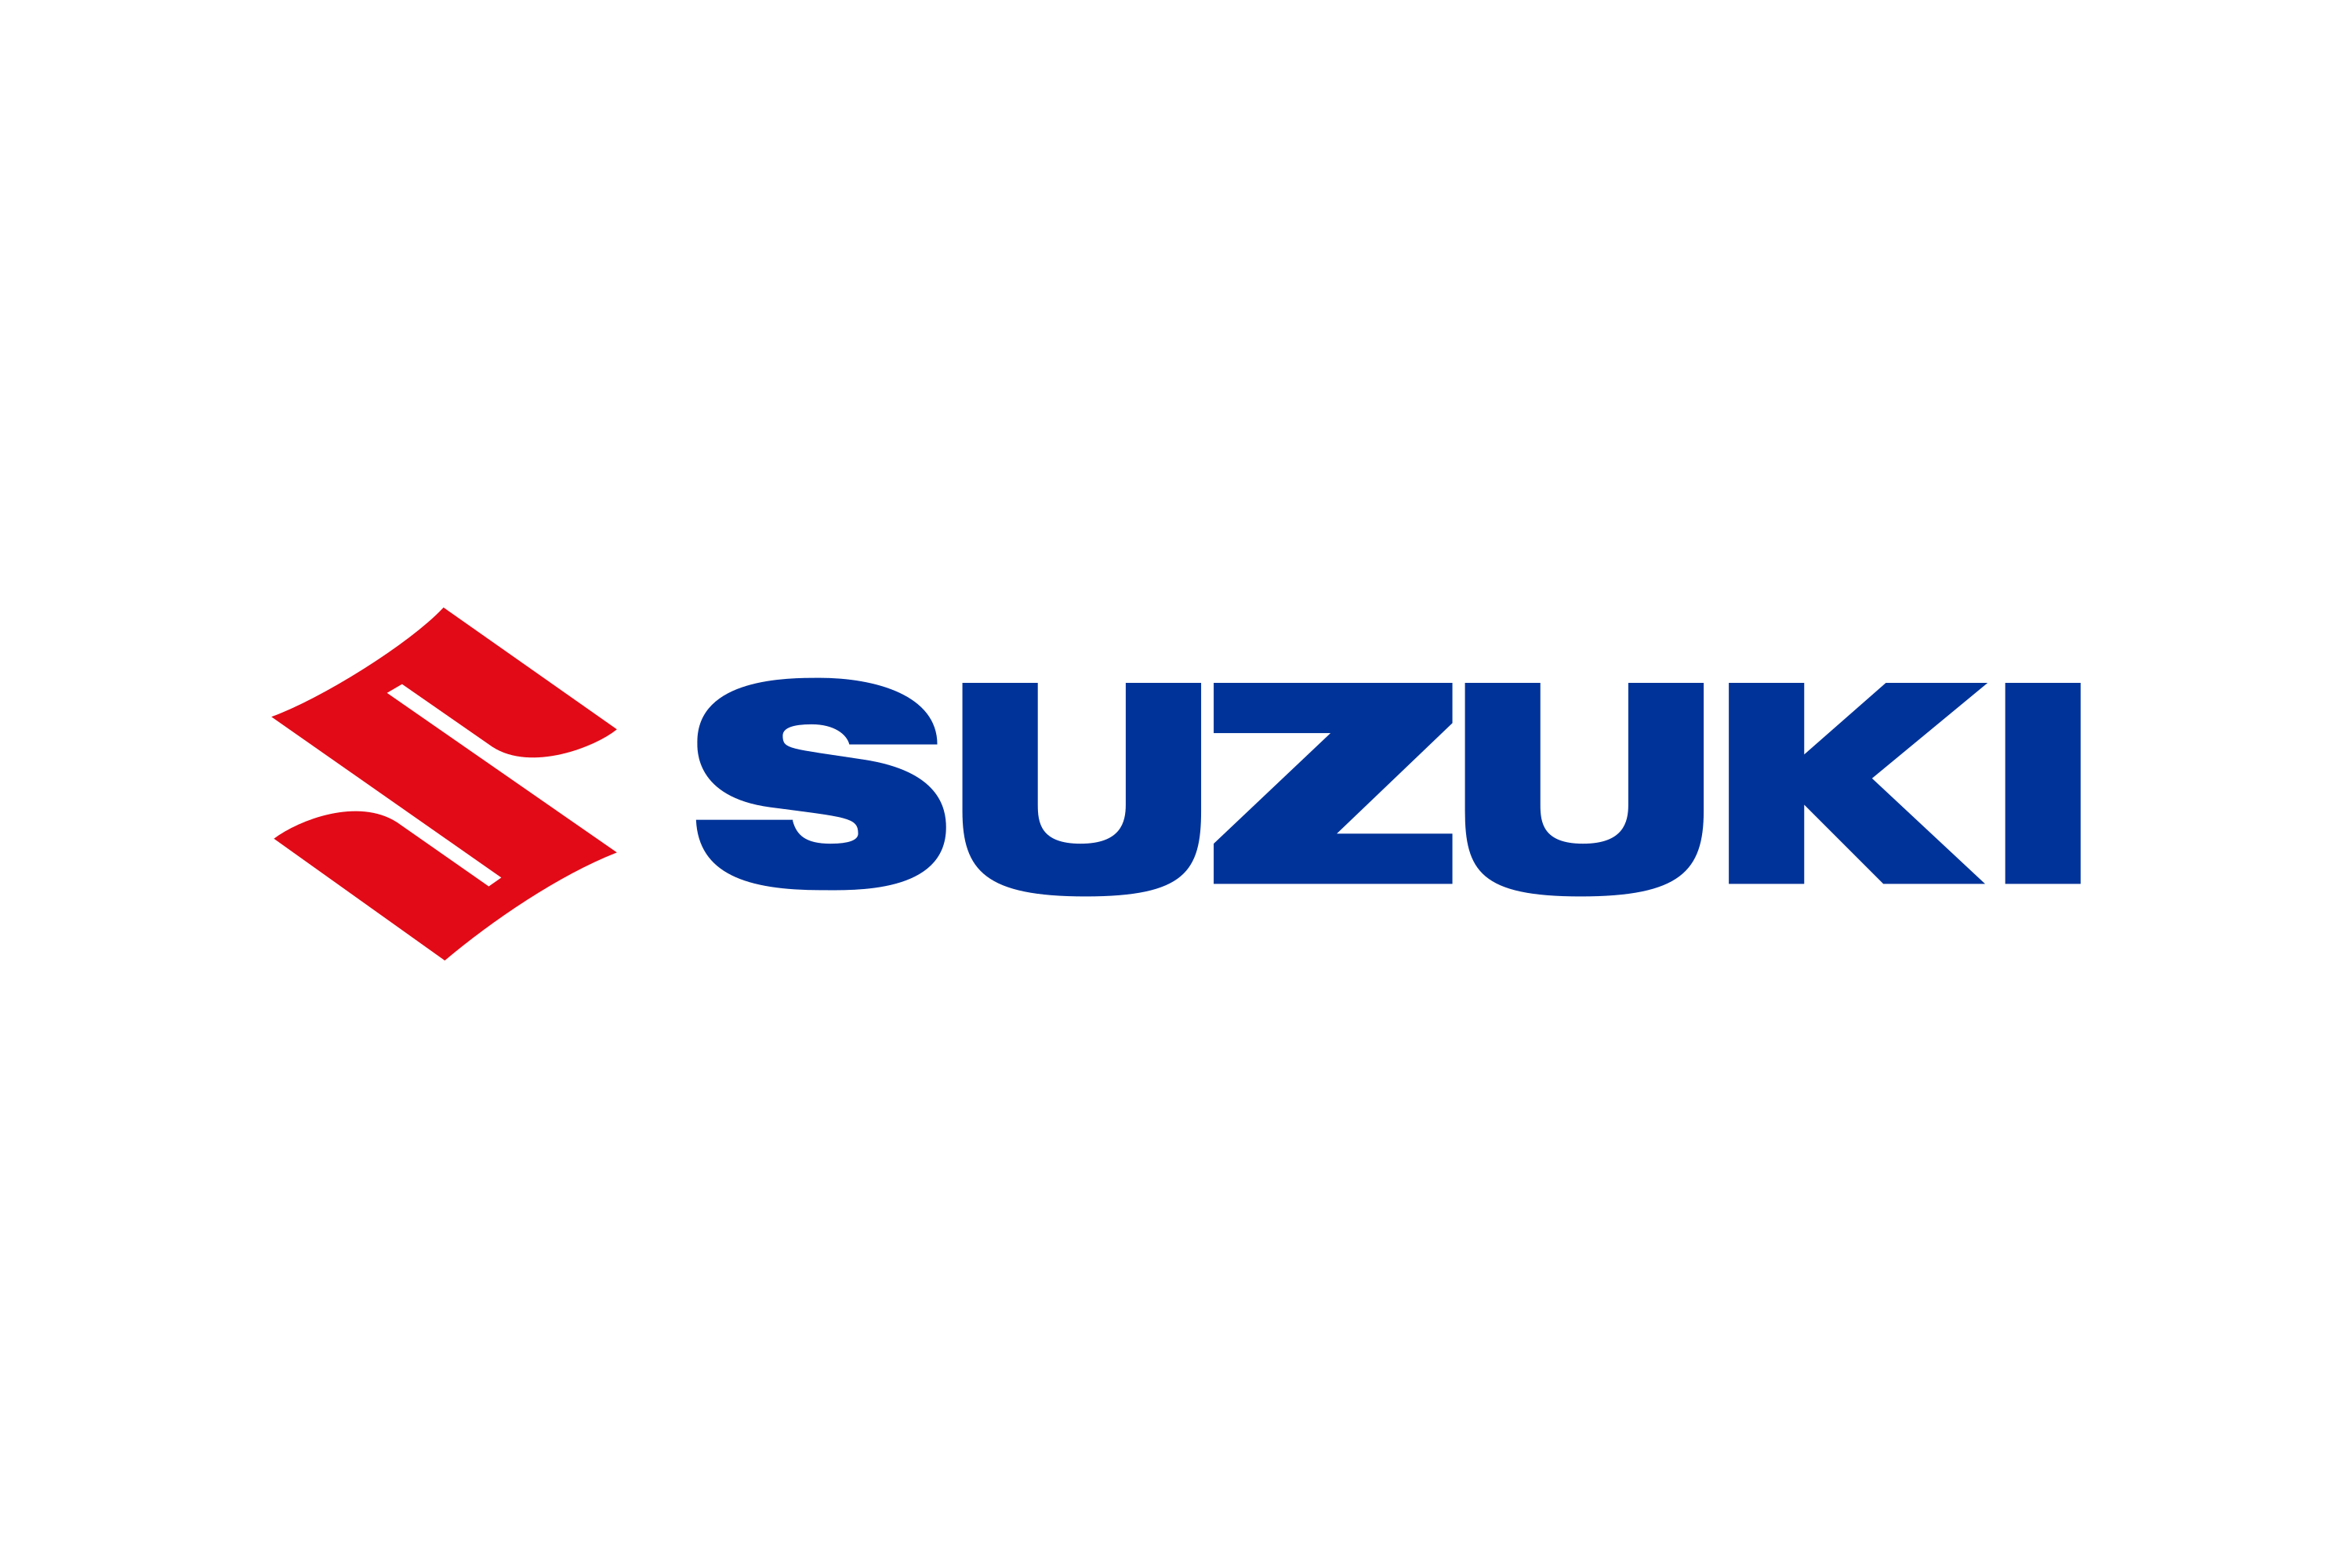 Logo Suzuki Maruti PNG Download Free PNG Image